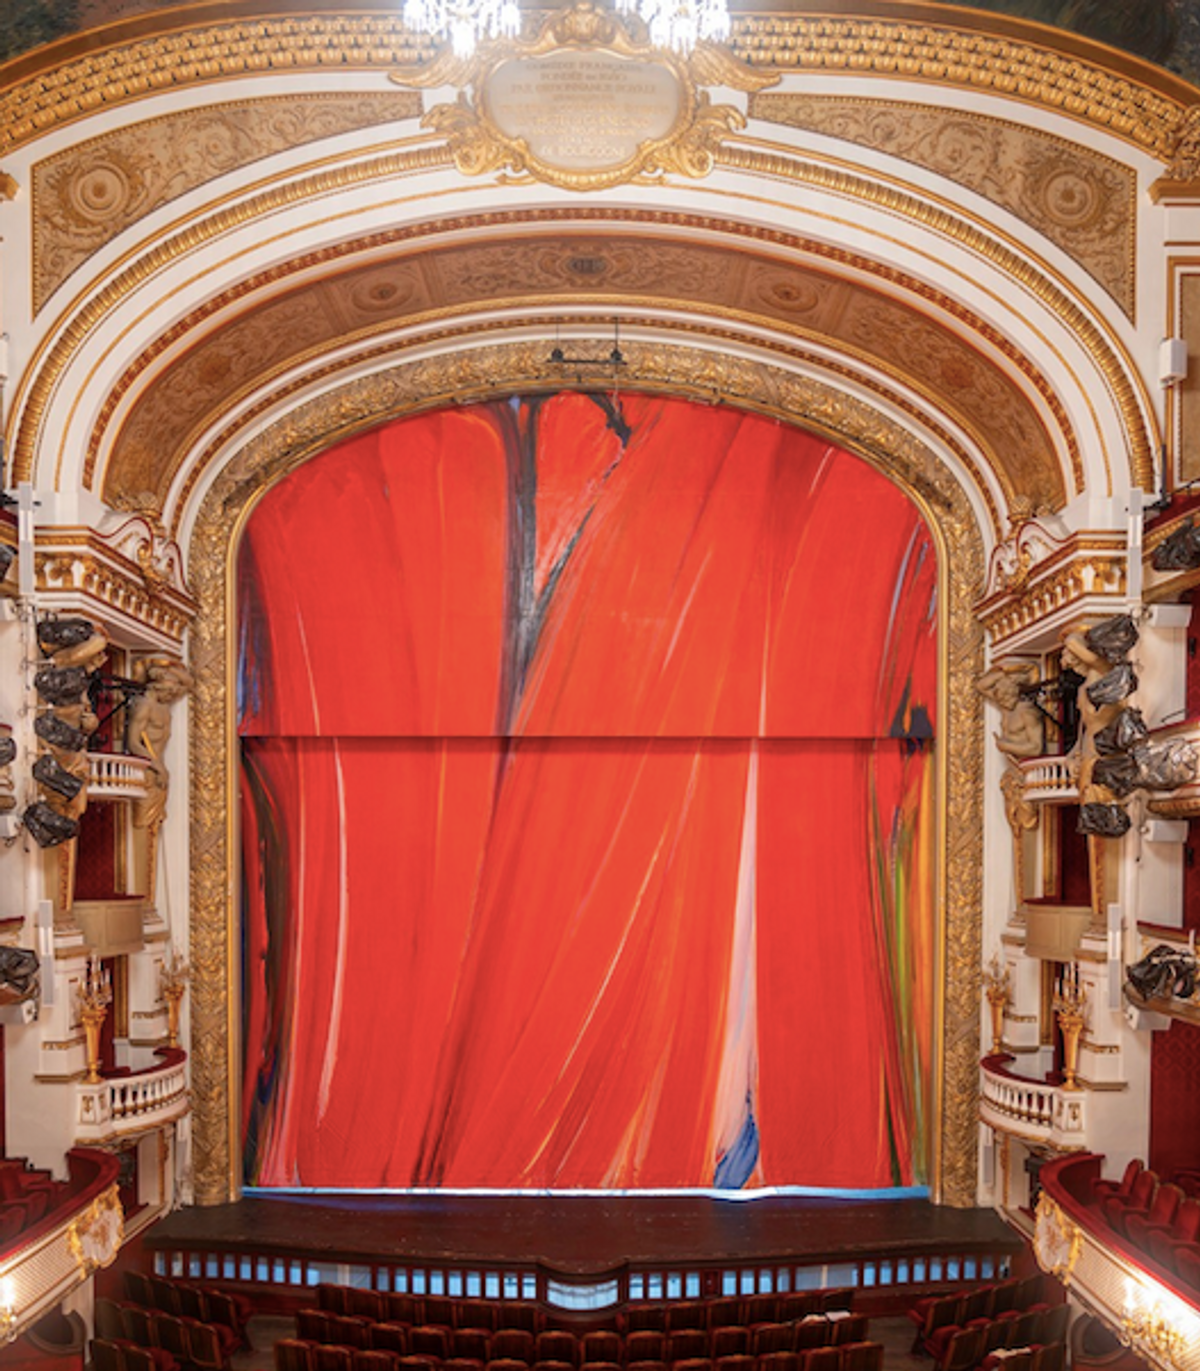 Le rideau réinstallé dans la salle Richelieu. © Vincent Royer